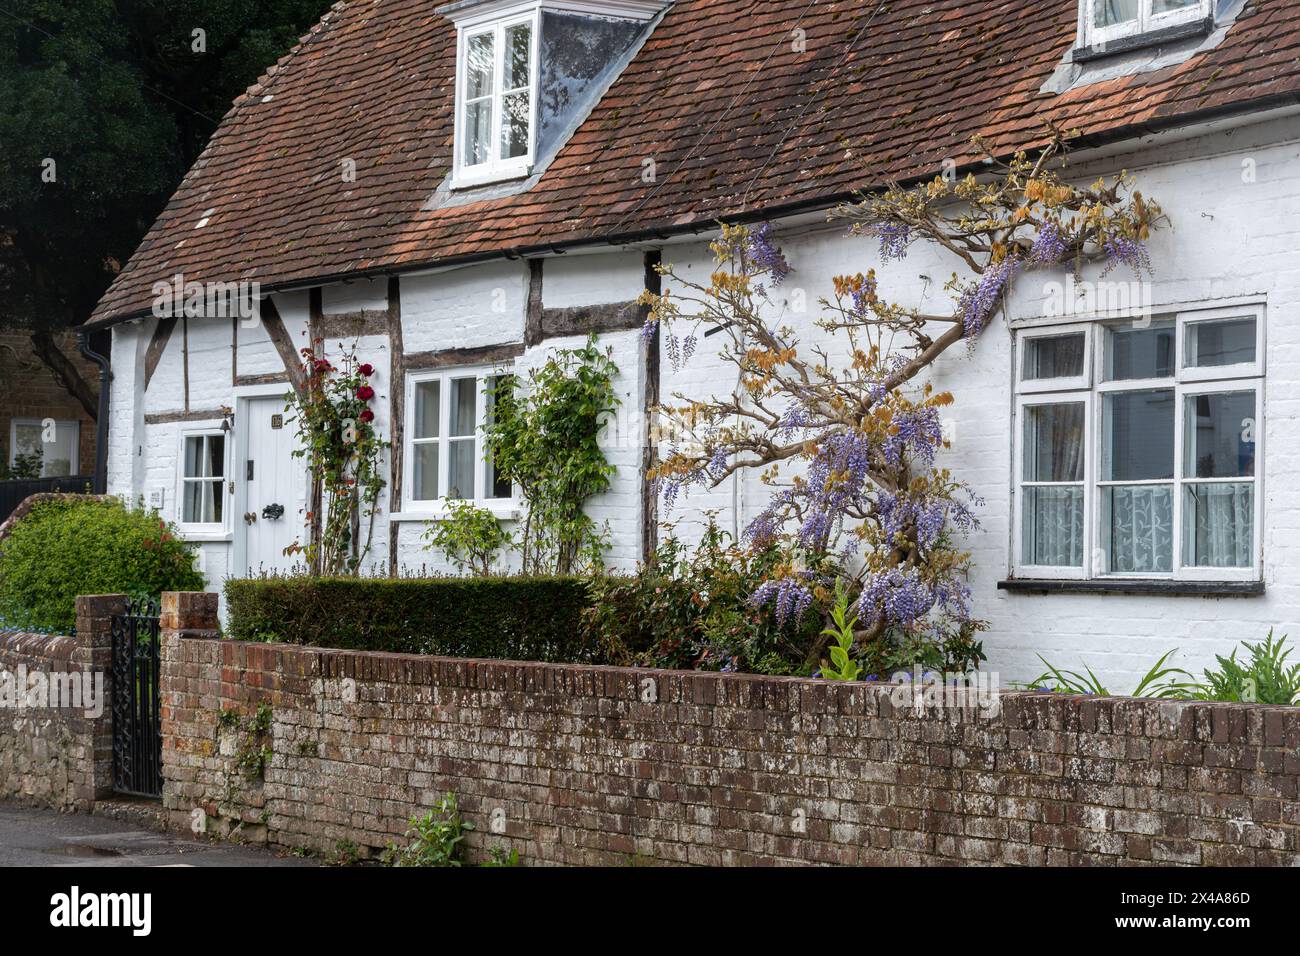 Ferienhaus mit Glyzinien, die an der Wand wachsen, mit mauvenfarbenen Blumen im Frühling oder April, Holybourne Village, Hampshire, England, Großbritannien Stockfoto